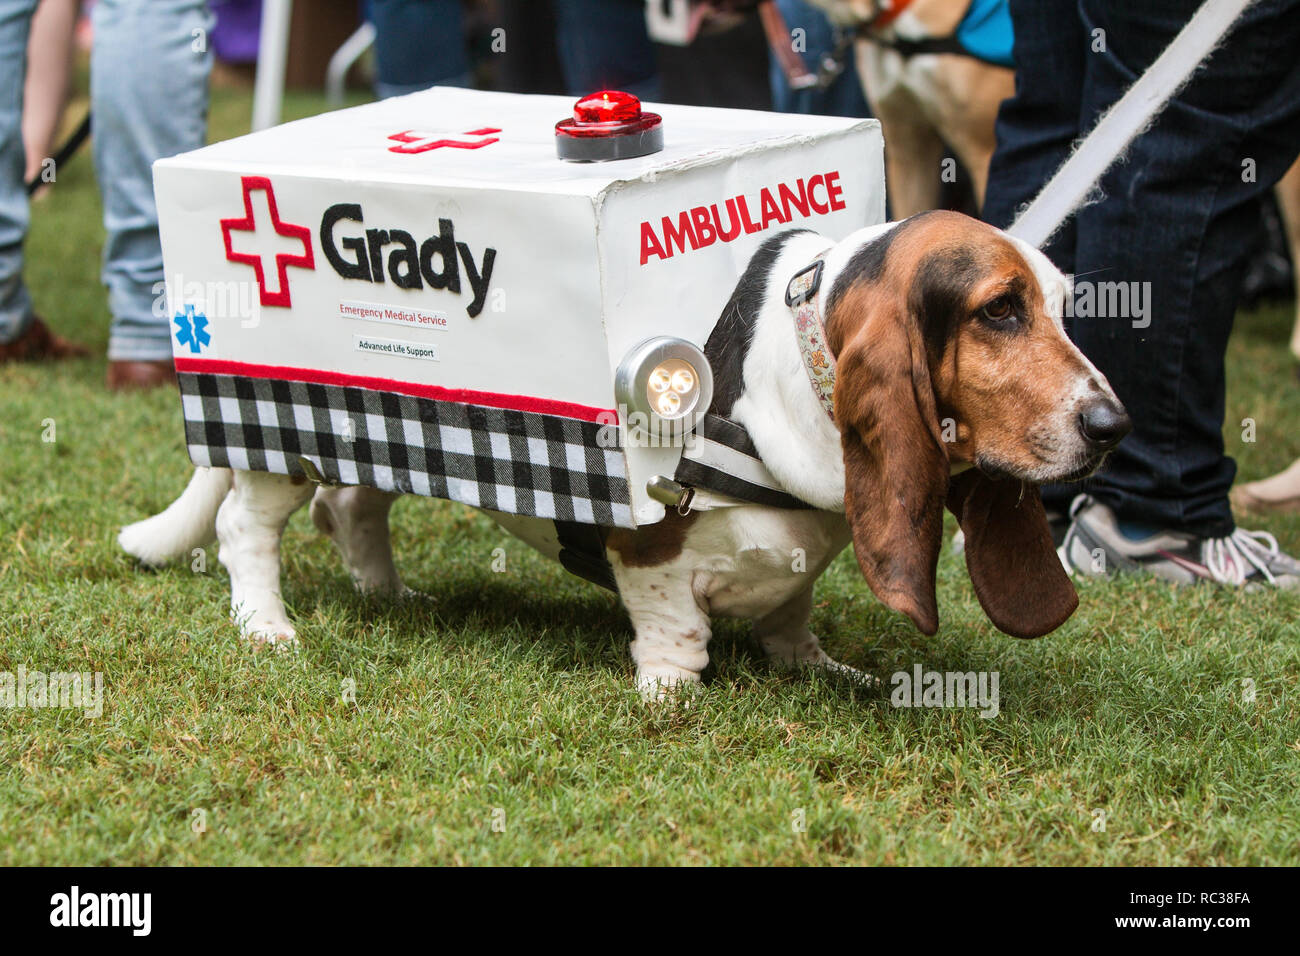 A cute basset-hound porte un costume d'ambulance de feux clignotants à Doggy Con, un concours de costume de chien le 18 août 2018 à Atlanta, GA. Banque D'Images